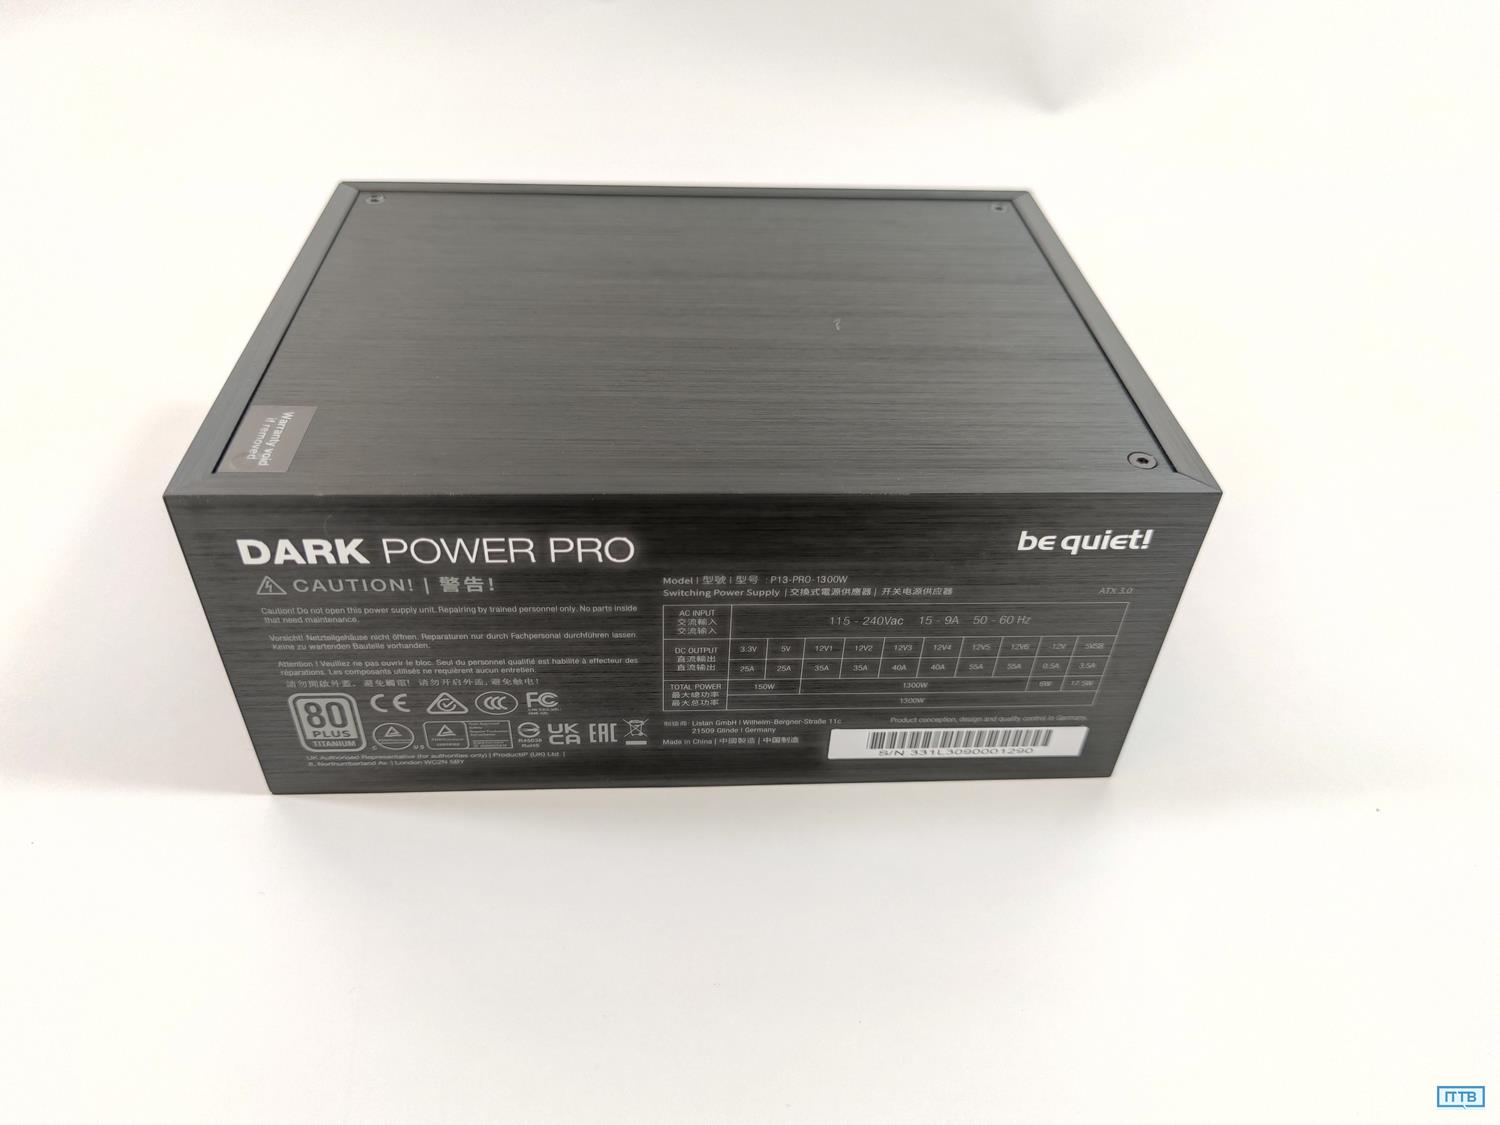 test be quiet! Dark Power Pro 13 1300W, recenzja be quiet! Dark Power Pro 13 1300W, opinia be quiet! Dark Power Pro 13 1300W